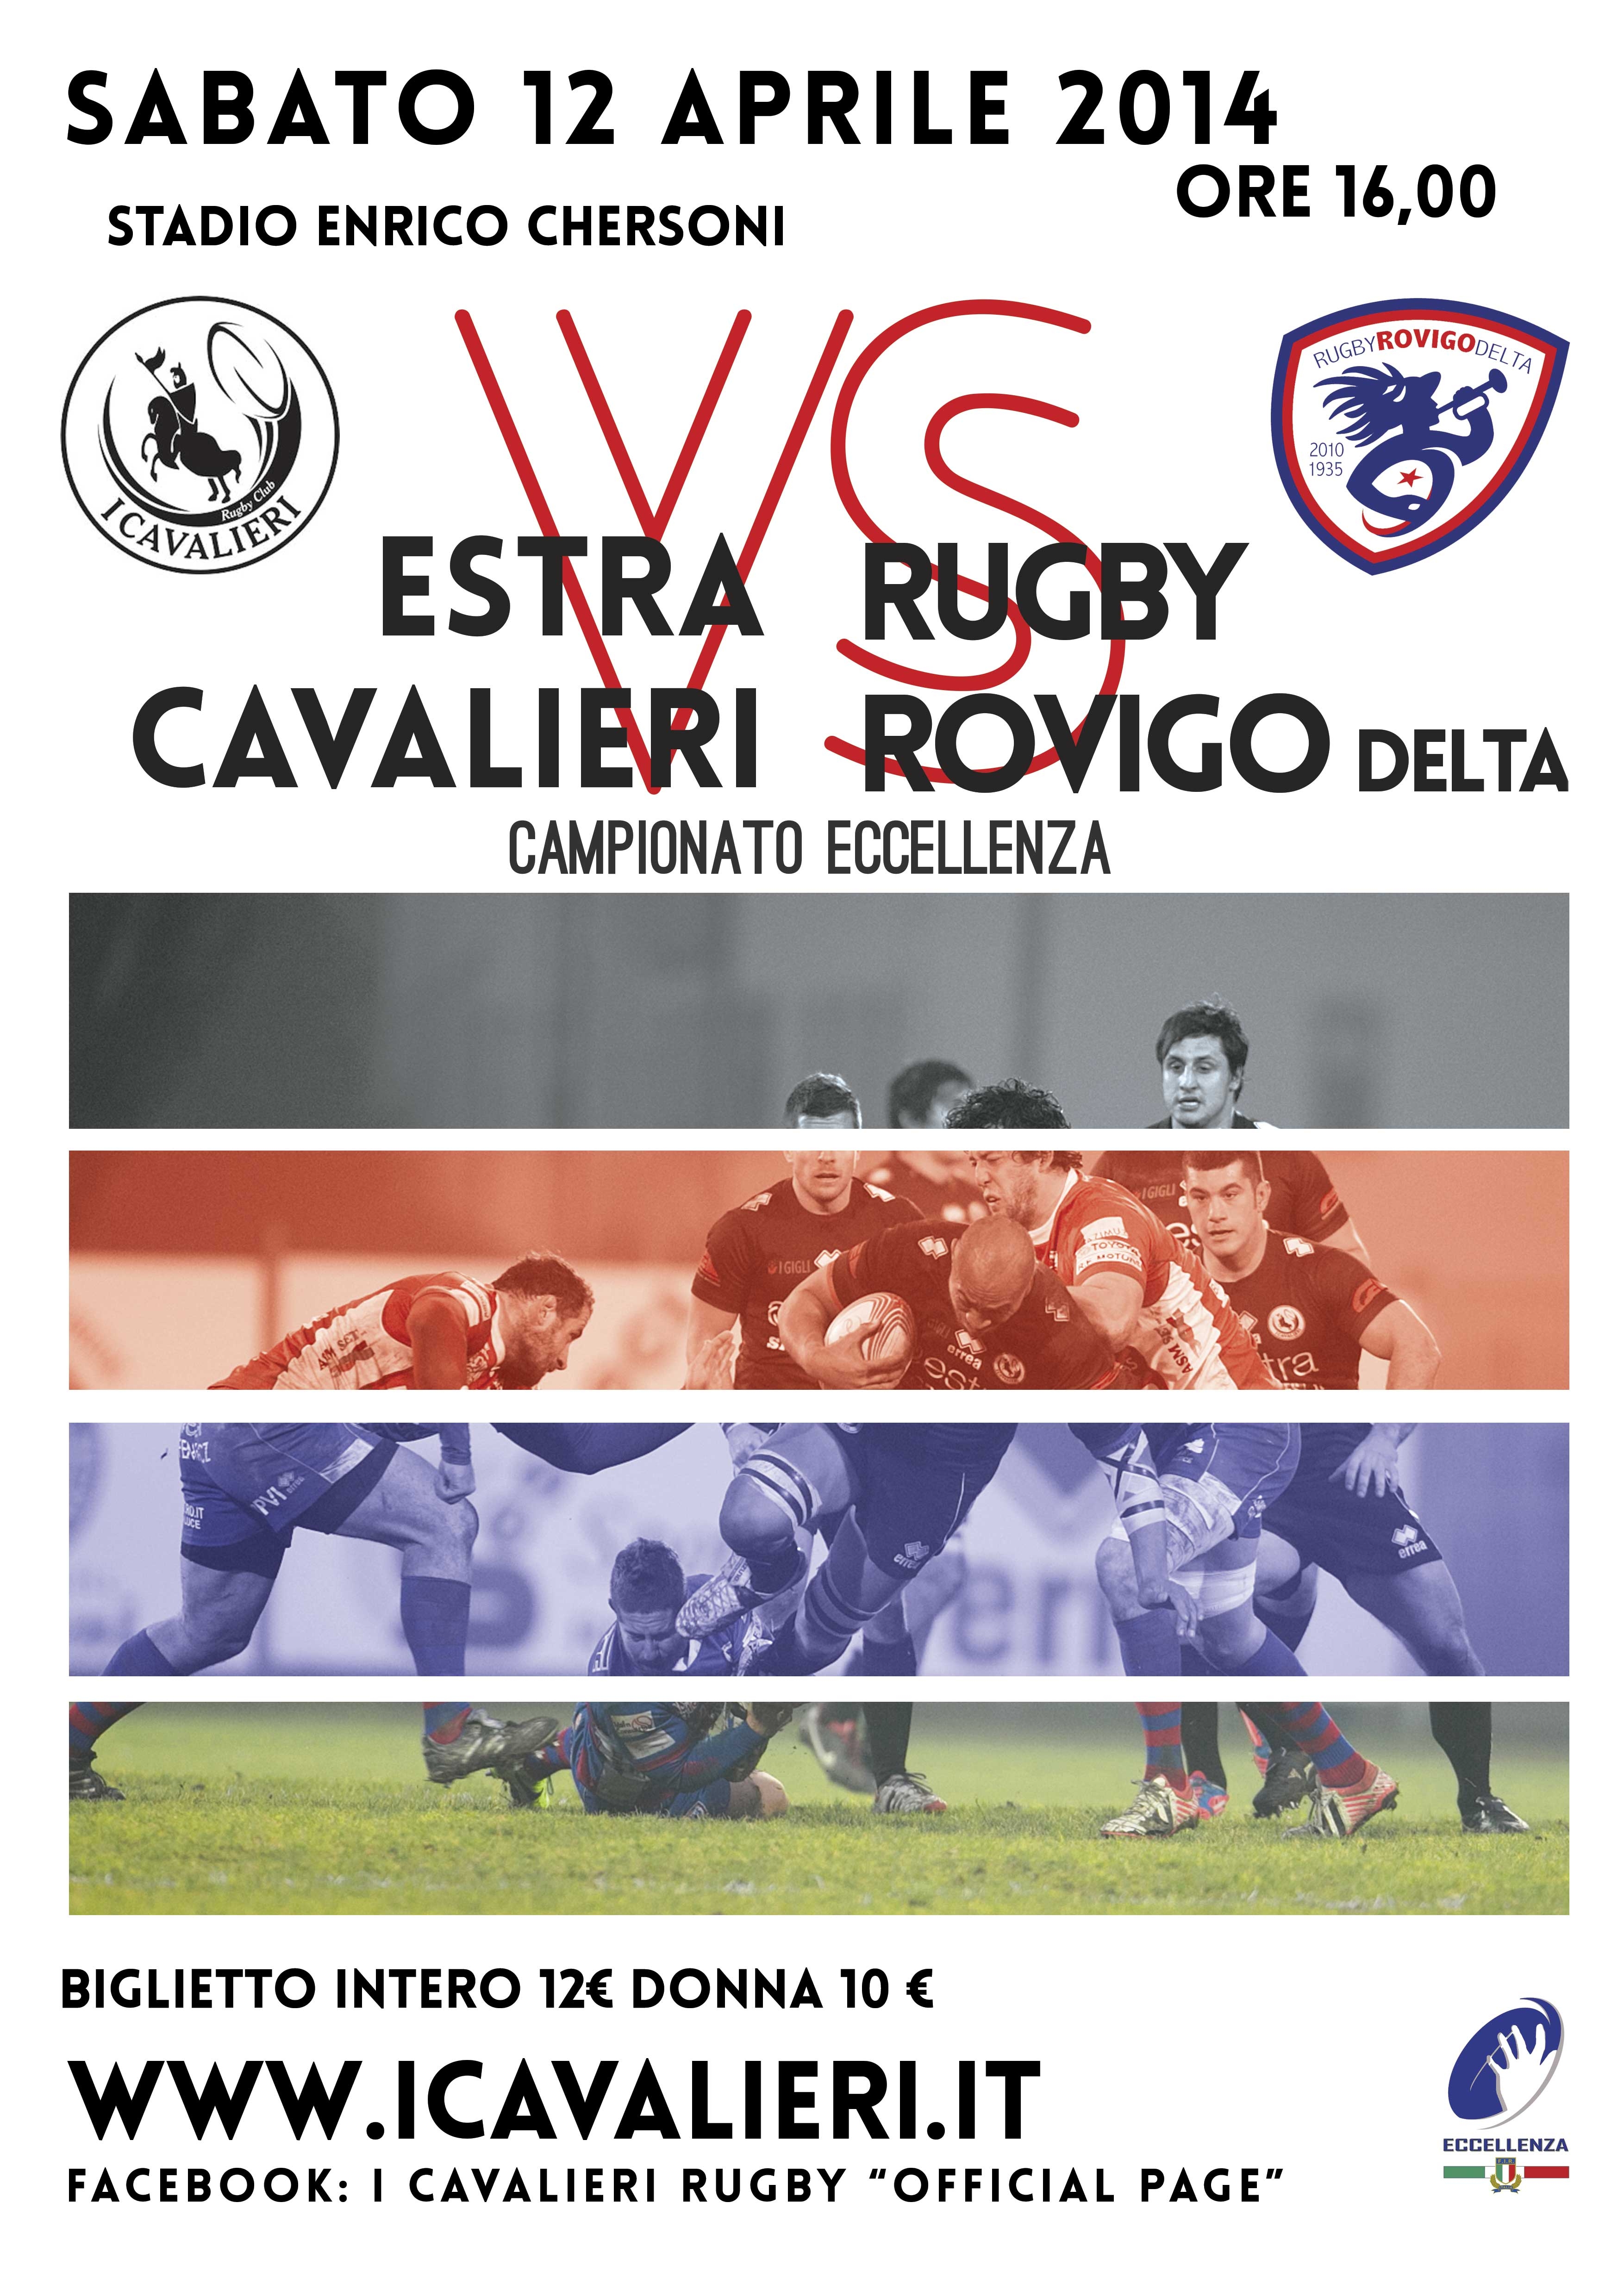 Estra I Cavalieri Prato Rugby-Rovigo